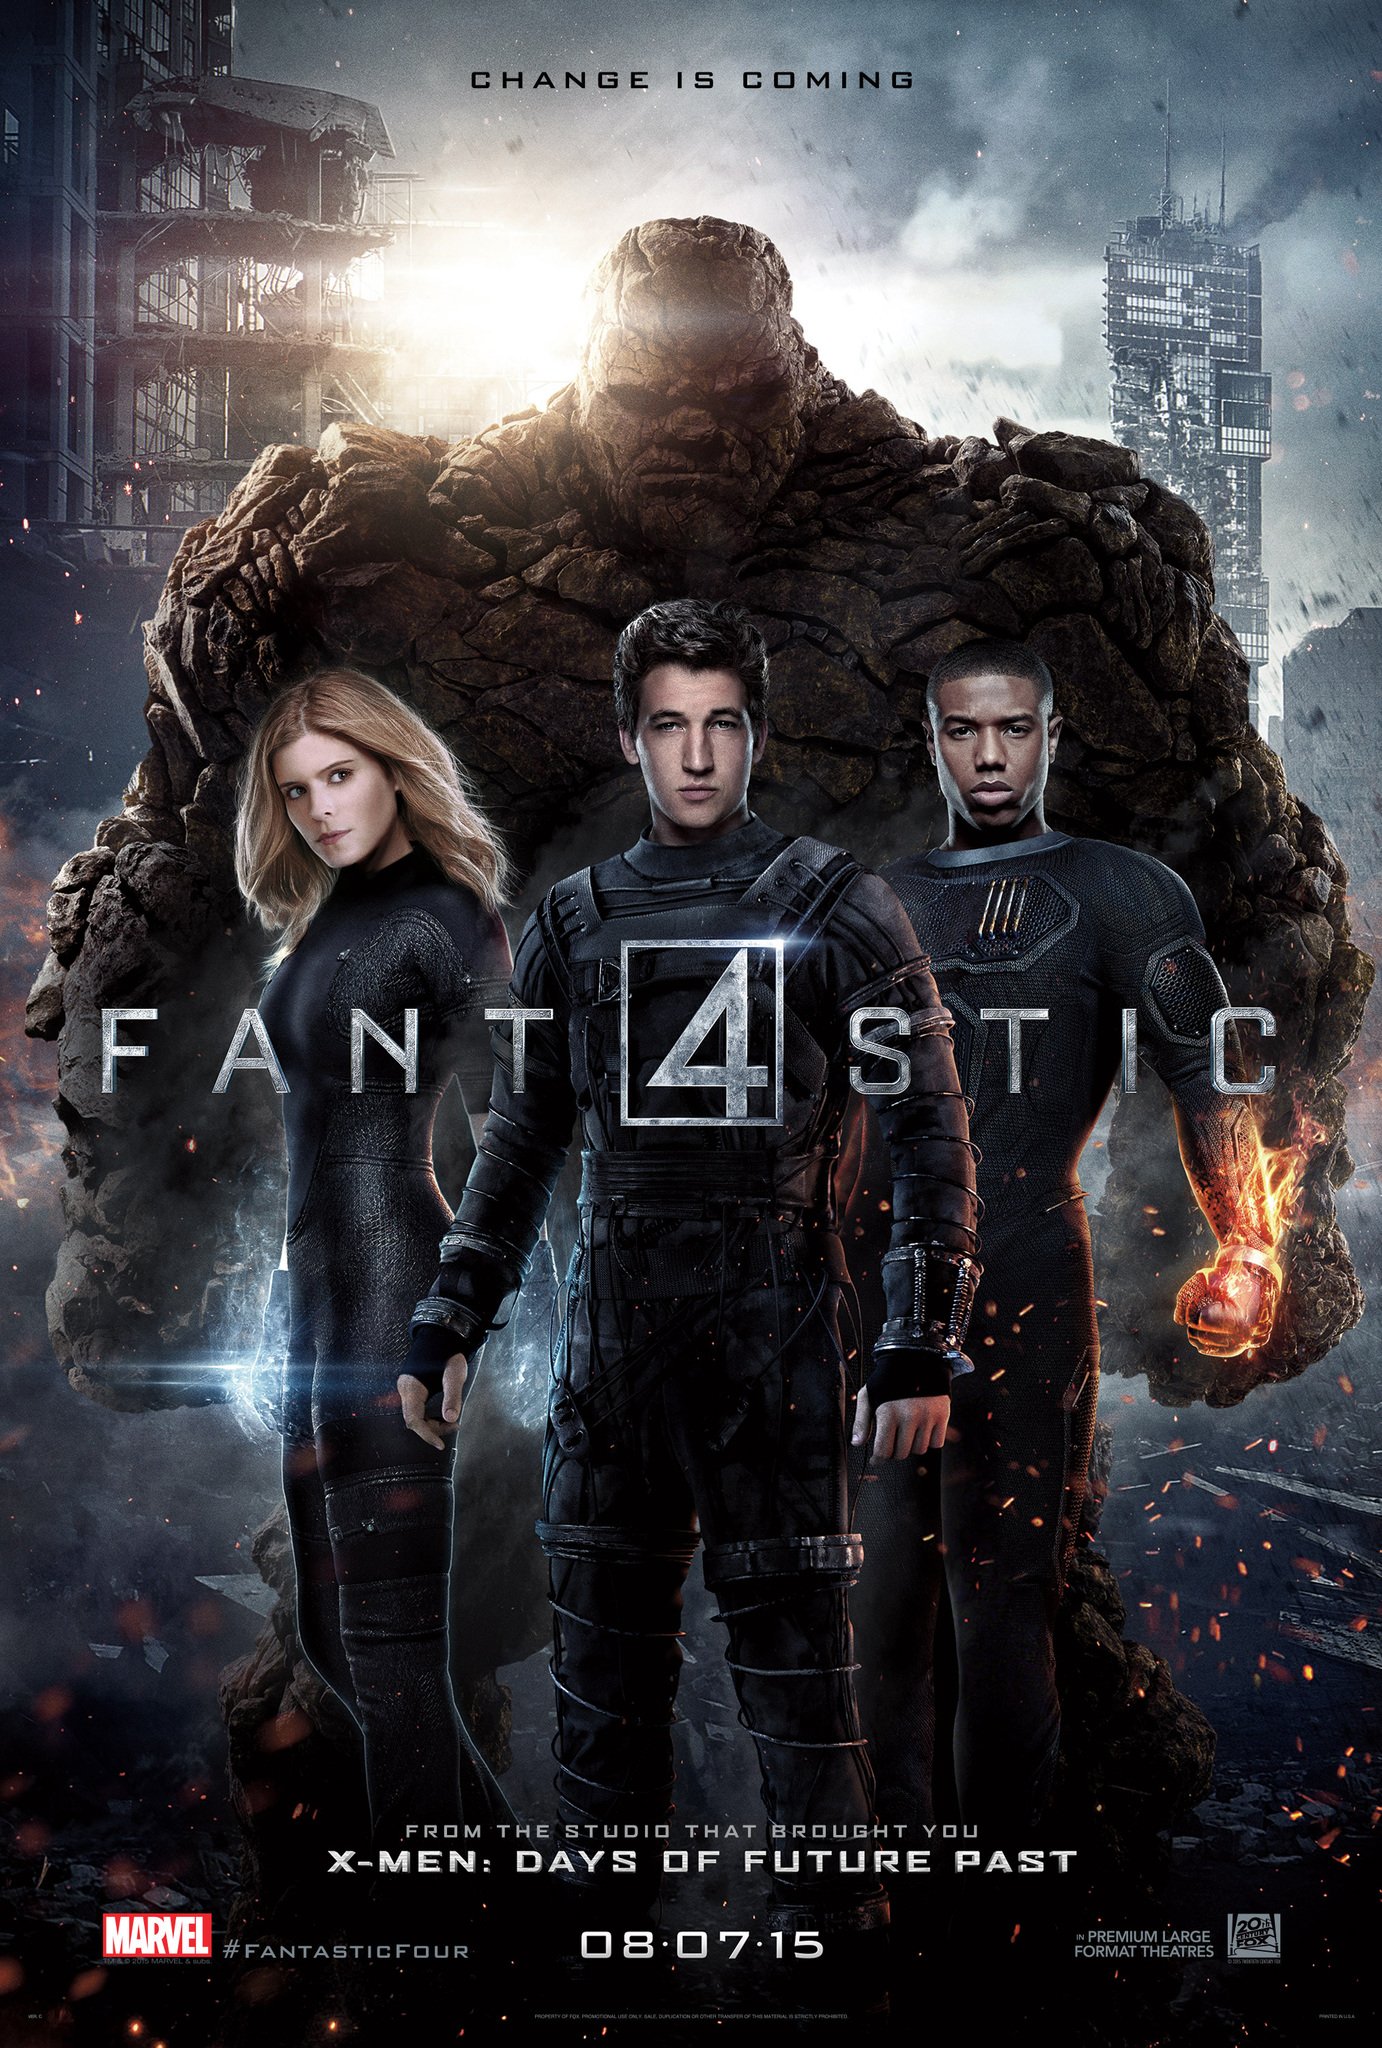 Fantastic Four (2015) - Assistant Score Mixer